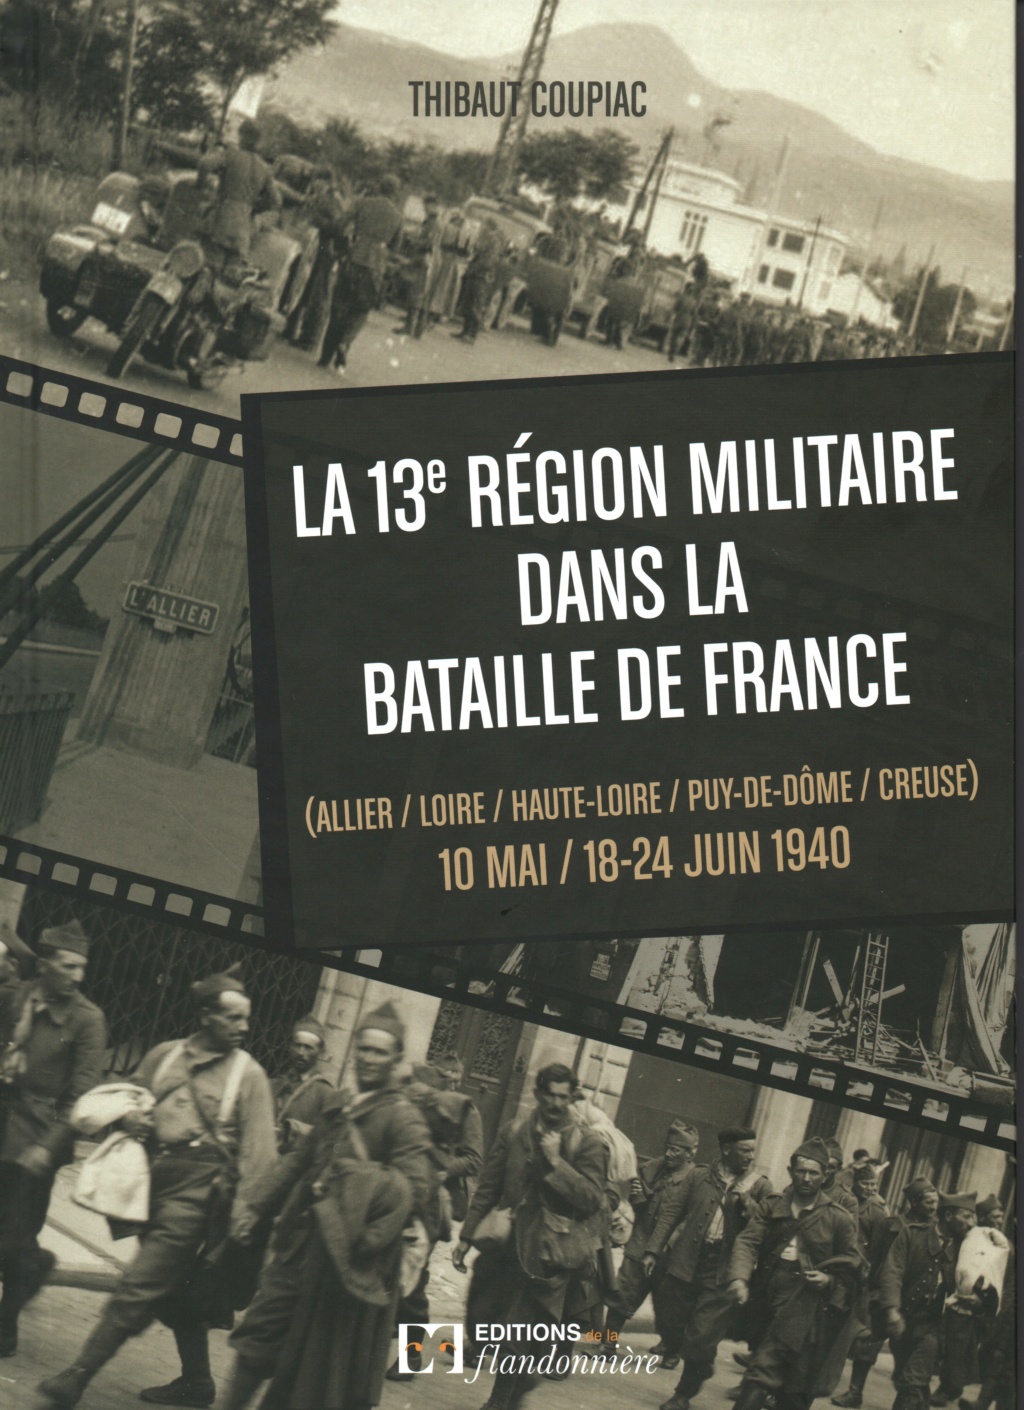 Livre "La 13e Région Militaire dans la Bataille de France" Image_10